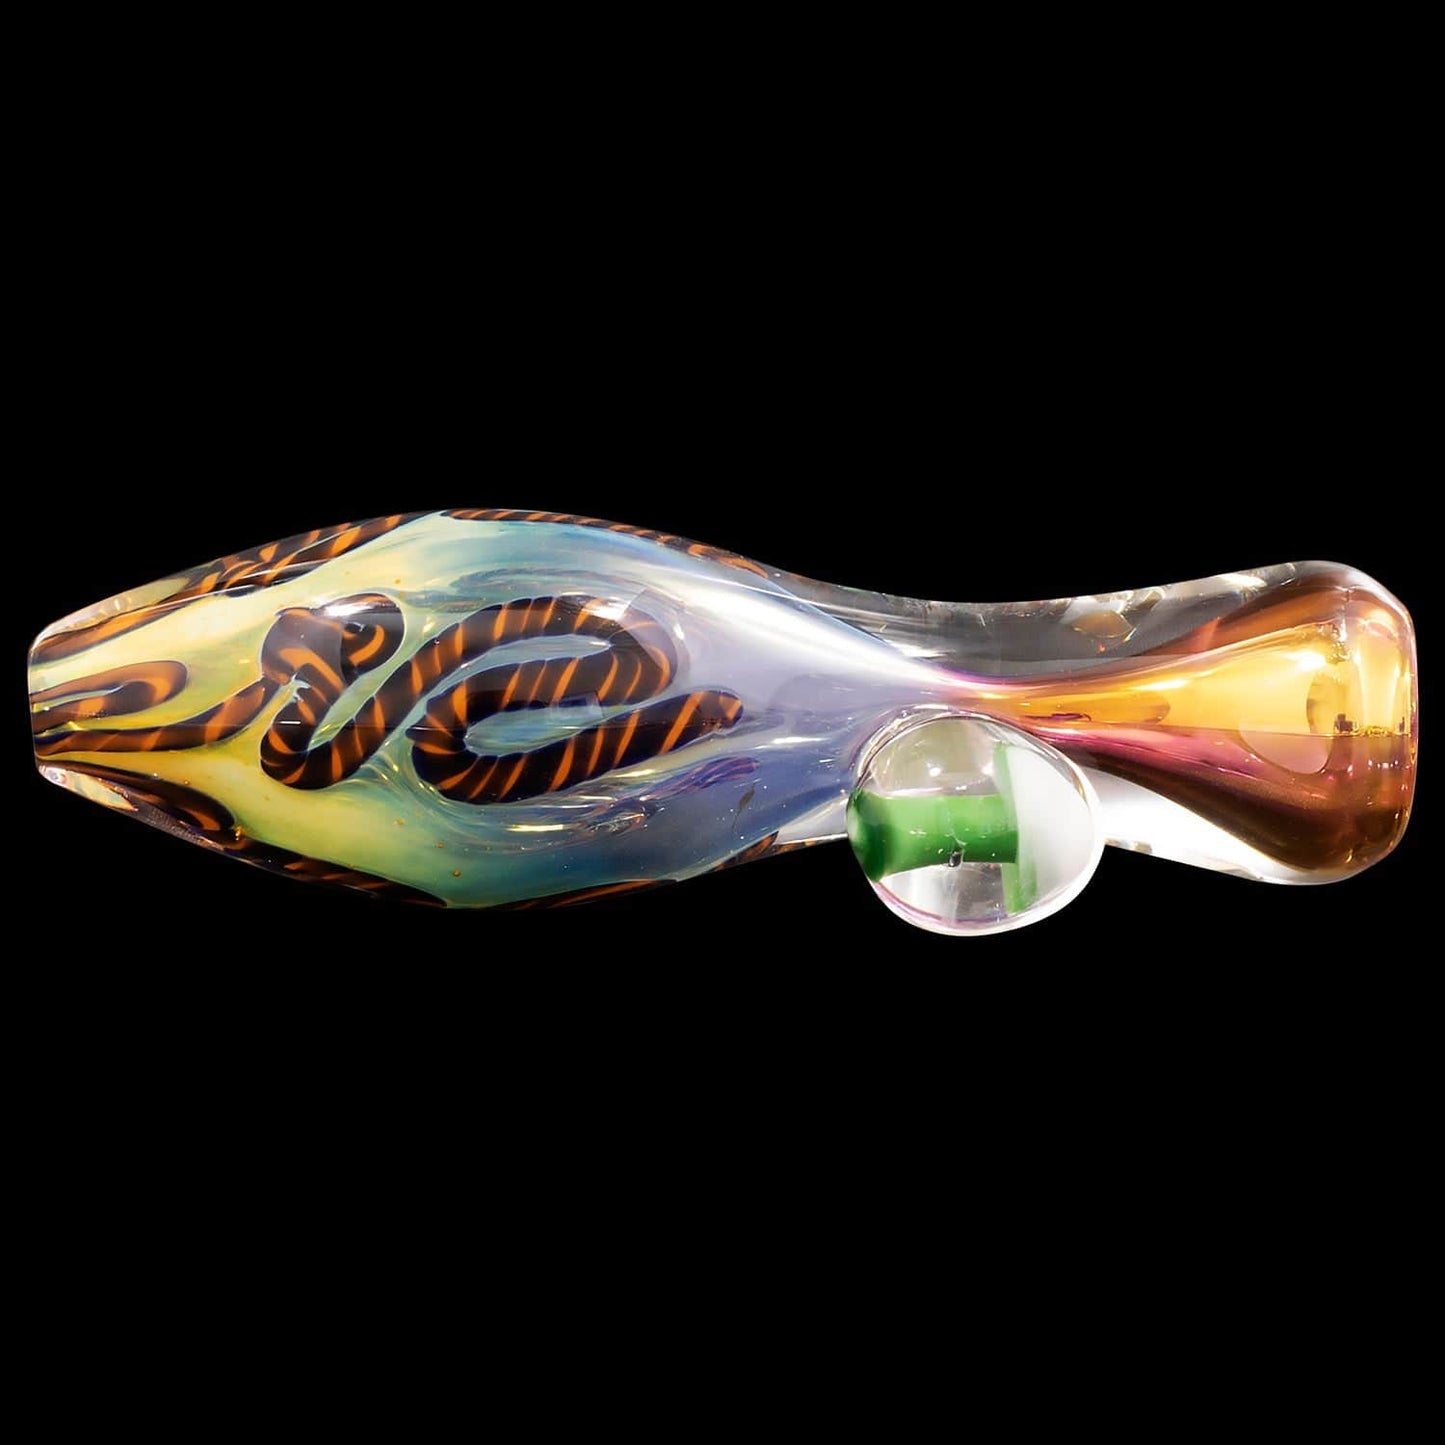 LA Pipes Hand Pipe "Fun-Guy" Glass Chillum